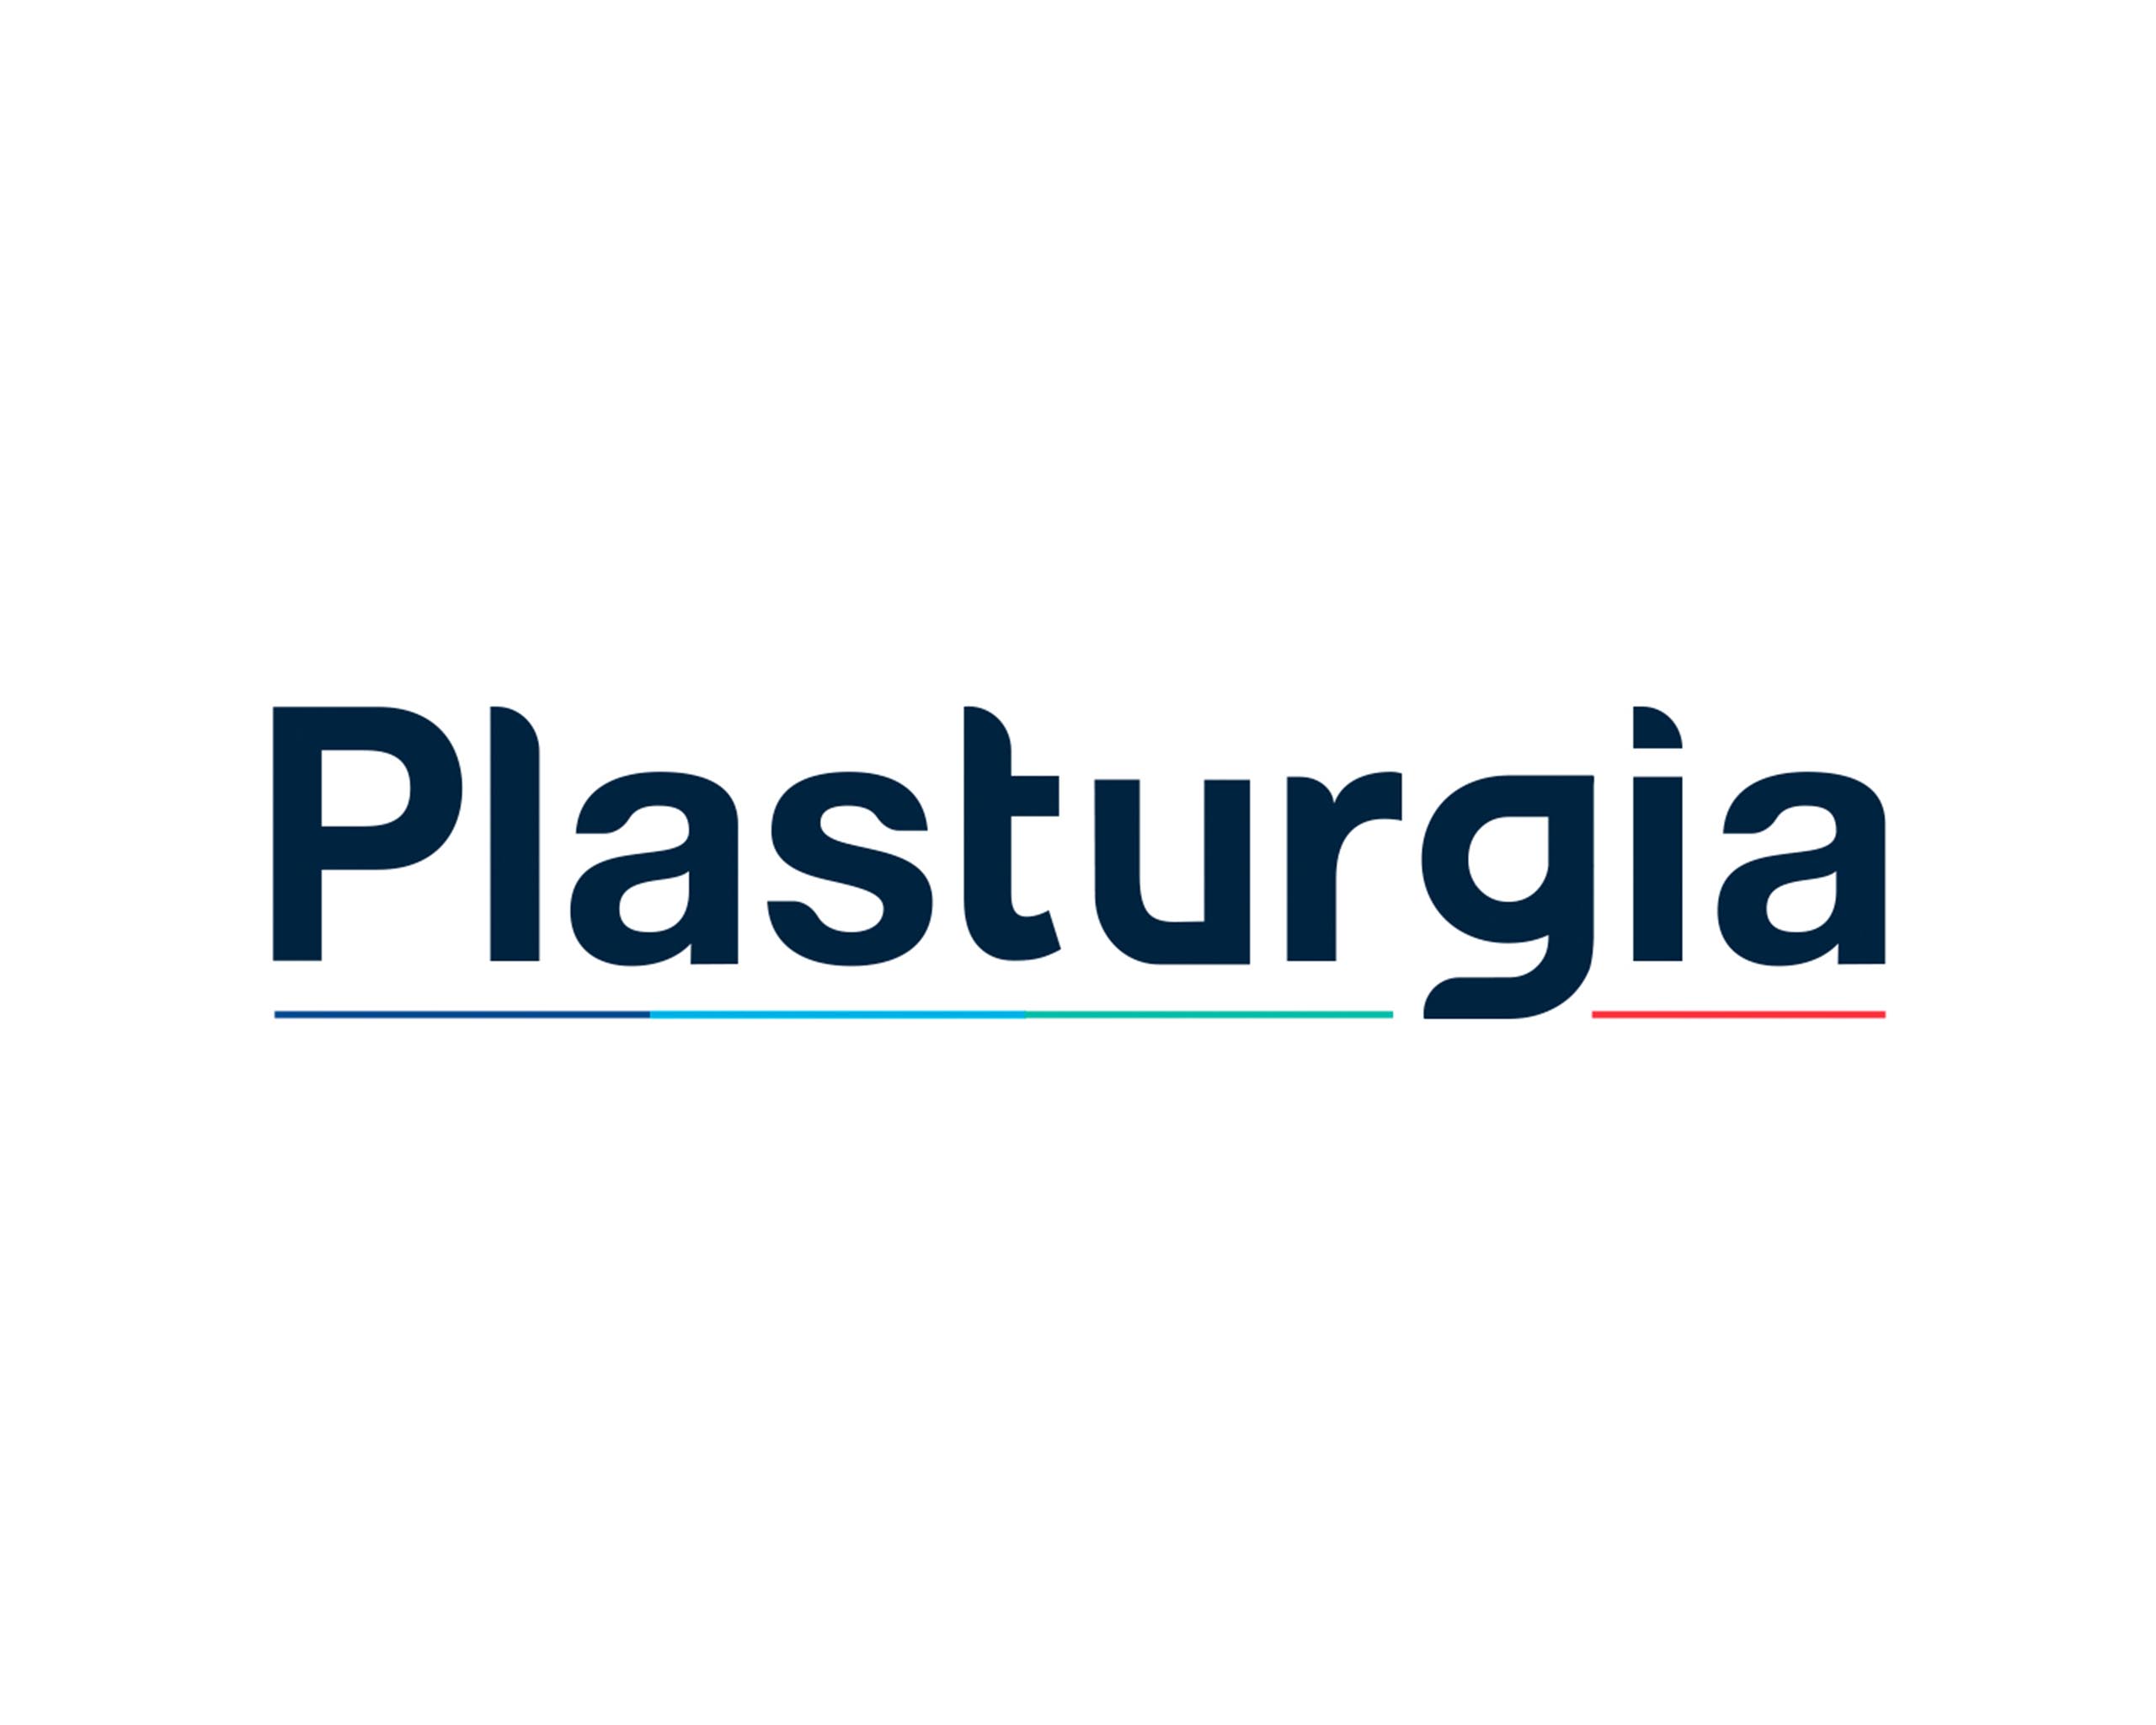 Plasturgia